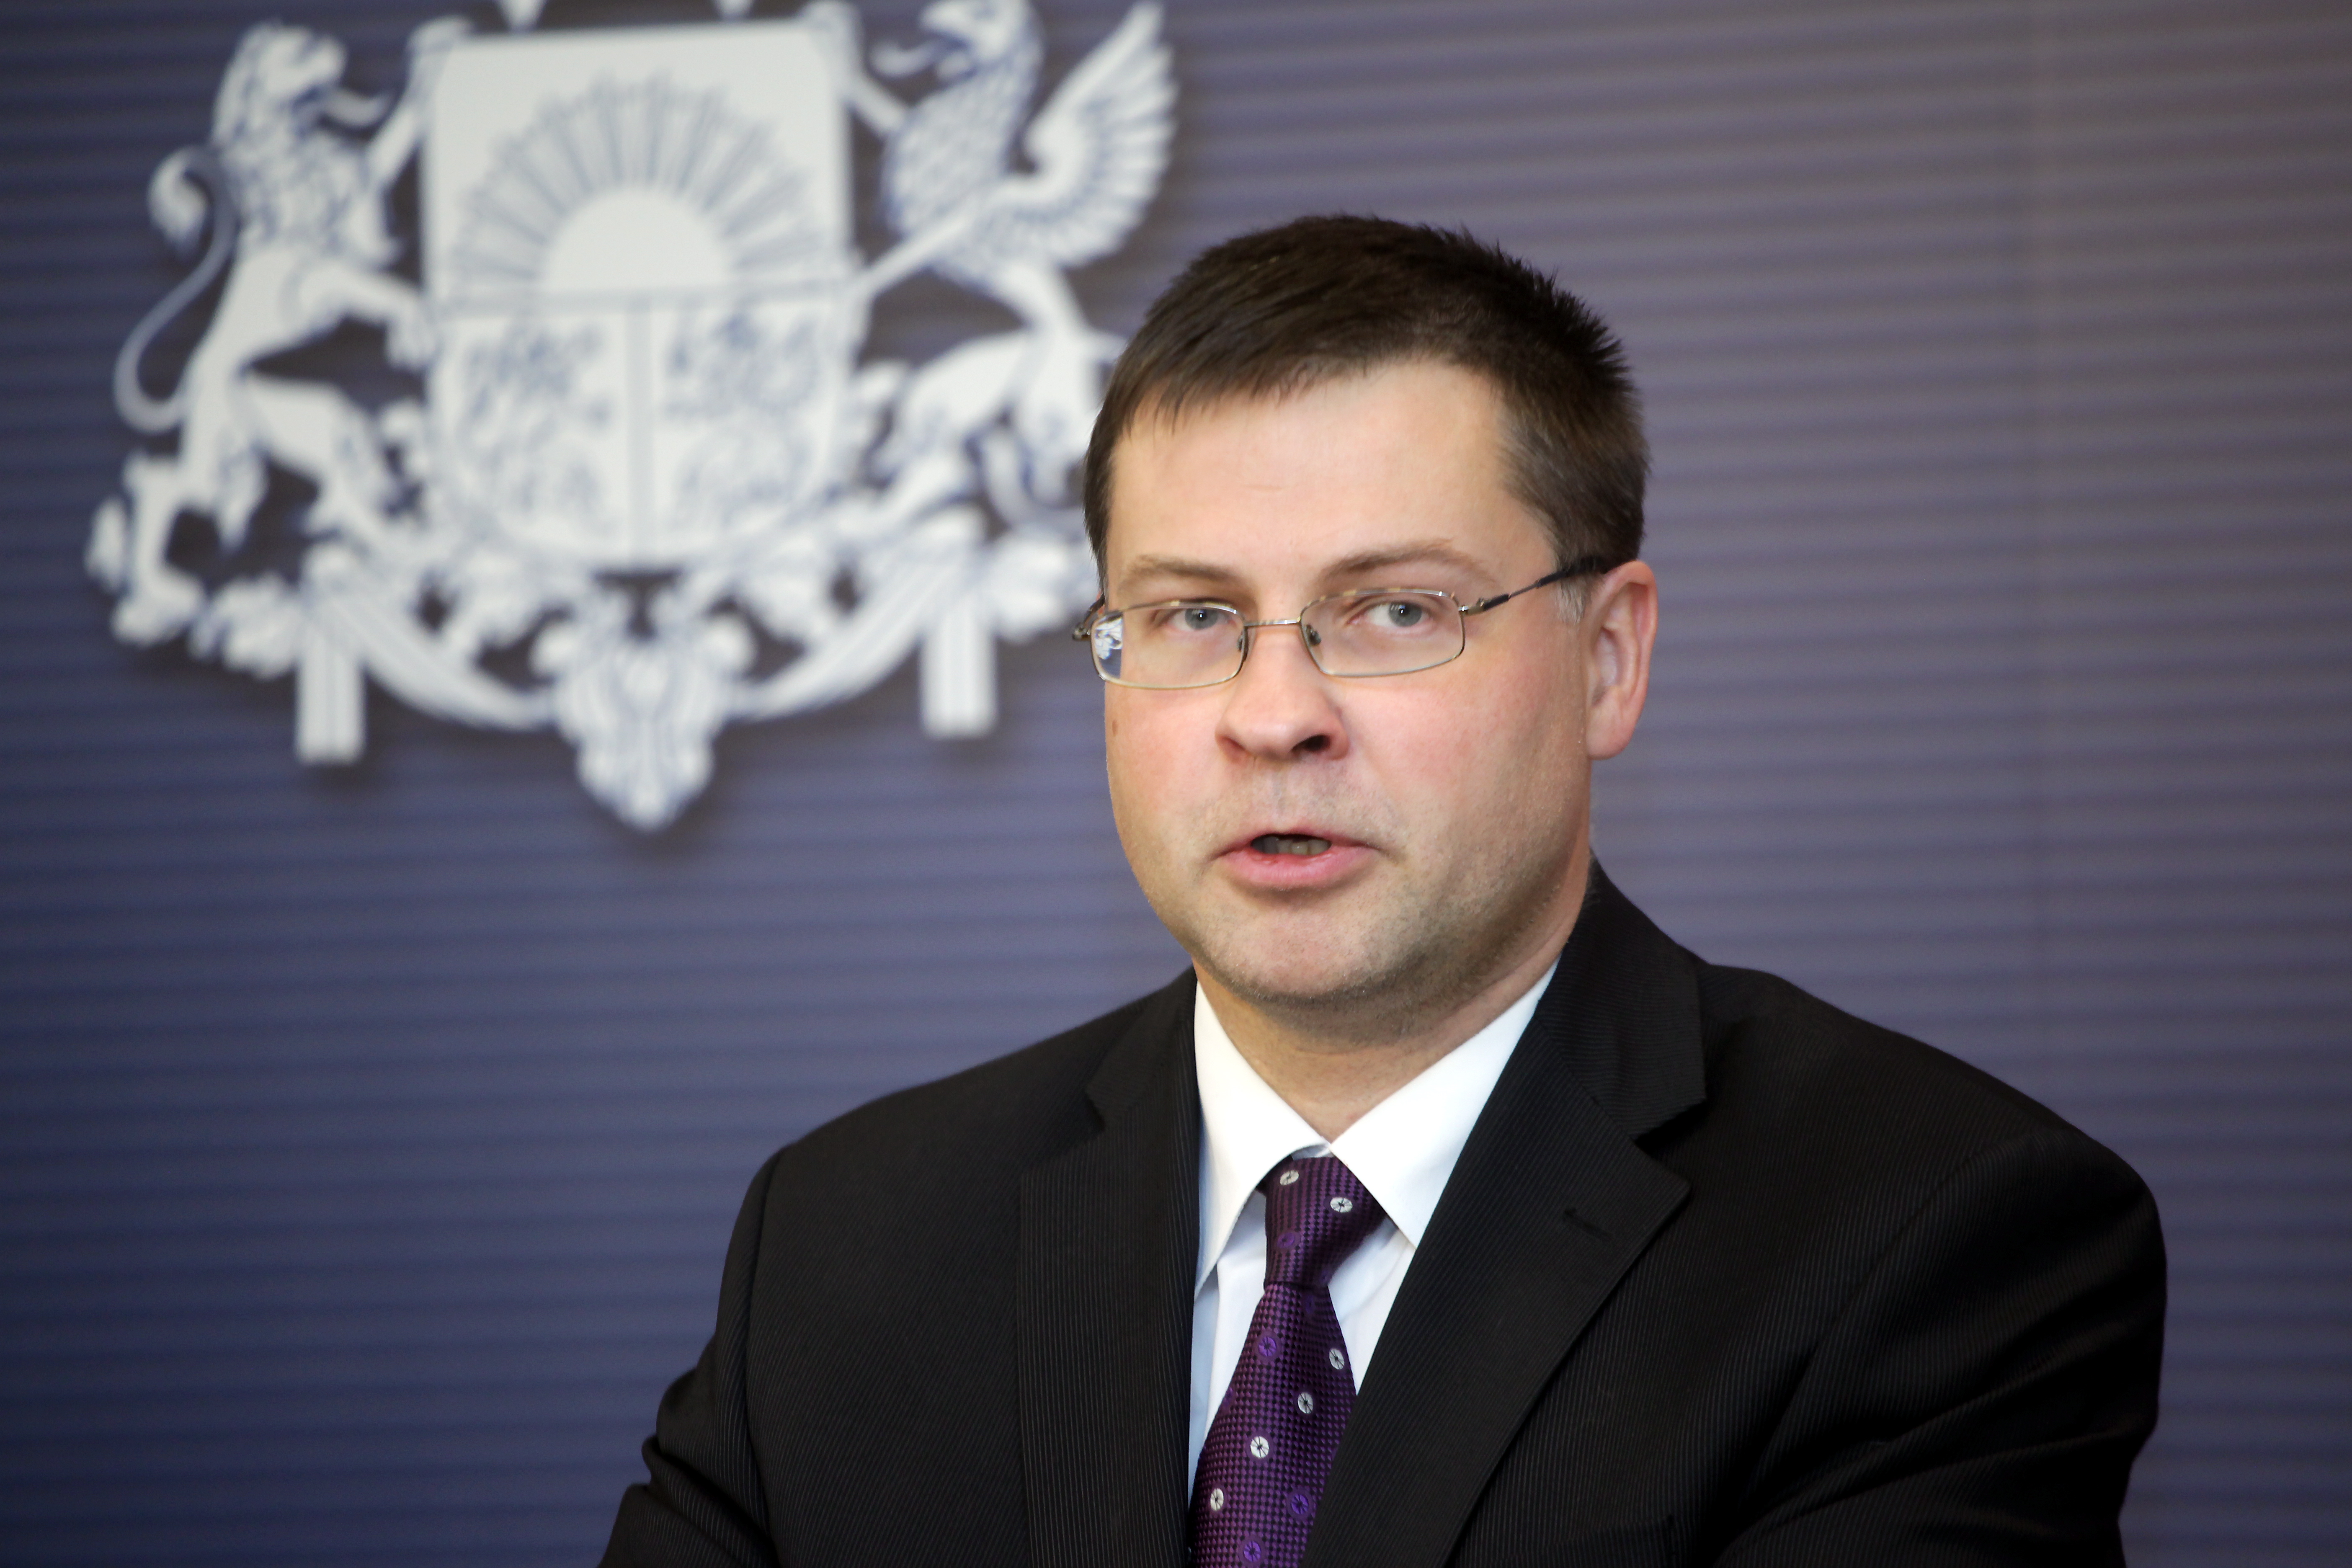 Dombrovskis tautai novēl nenogurstošu darbu